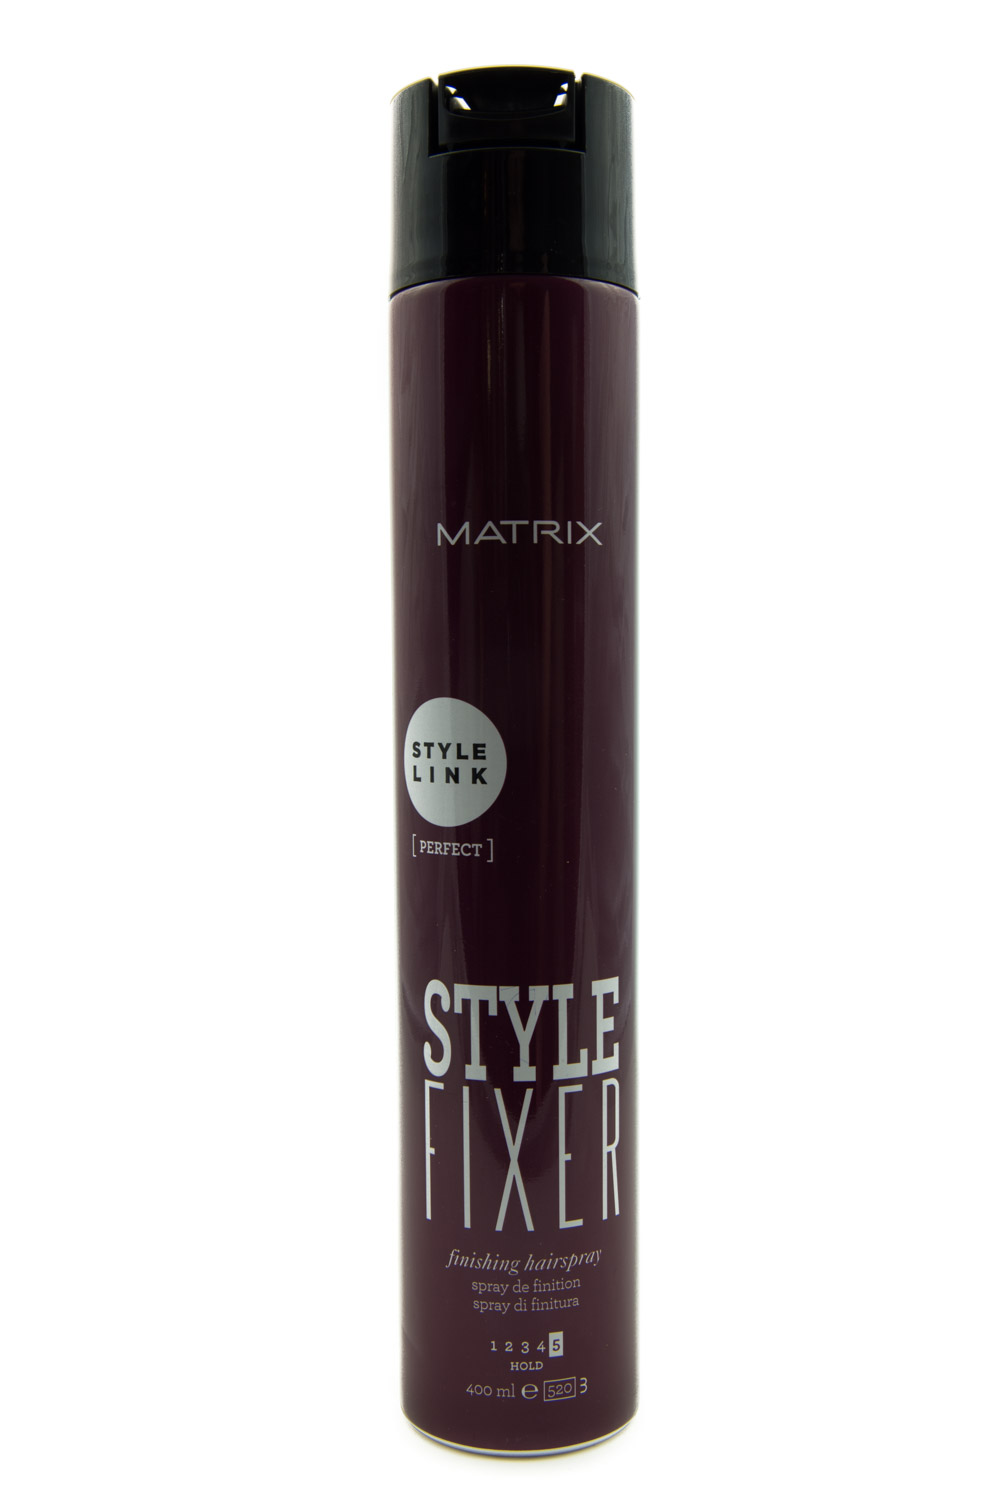 matrix style fixer finishing hairspray 400ml w lakier do włosów